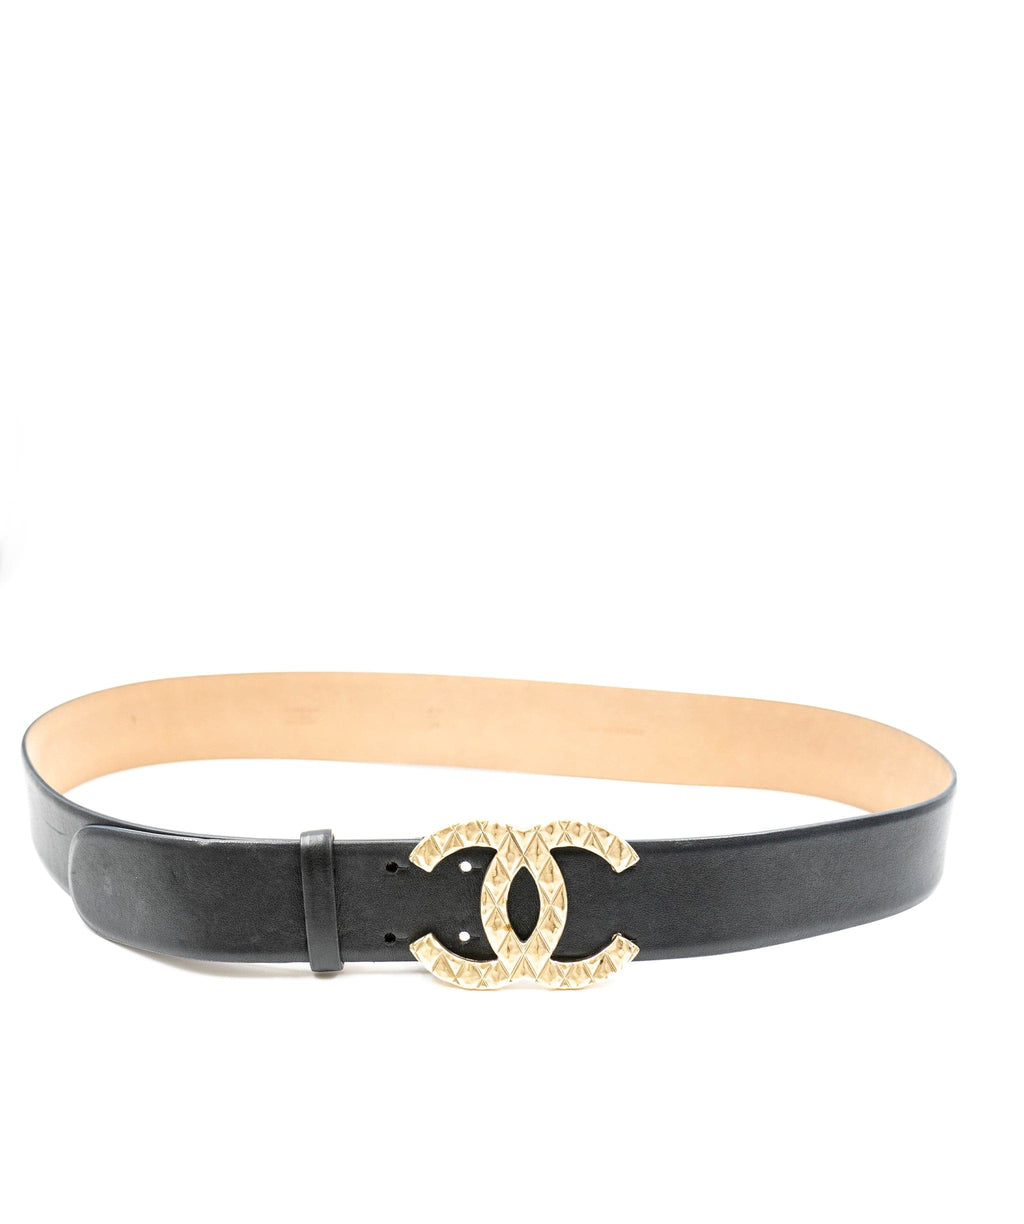 Chanel black leather belt ASL3376